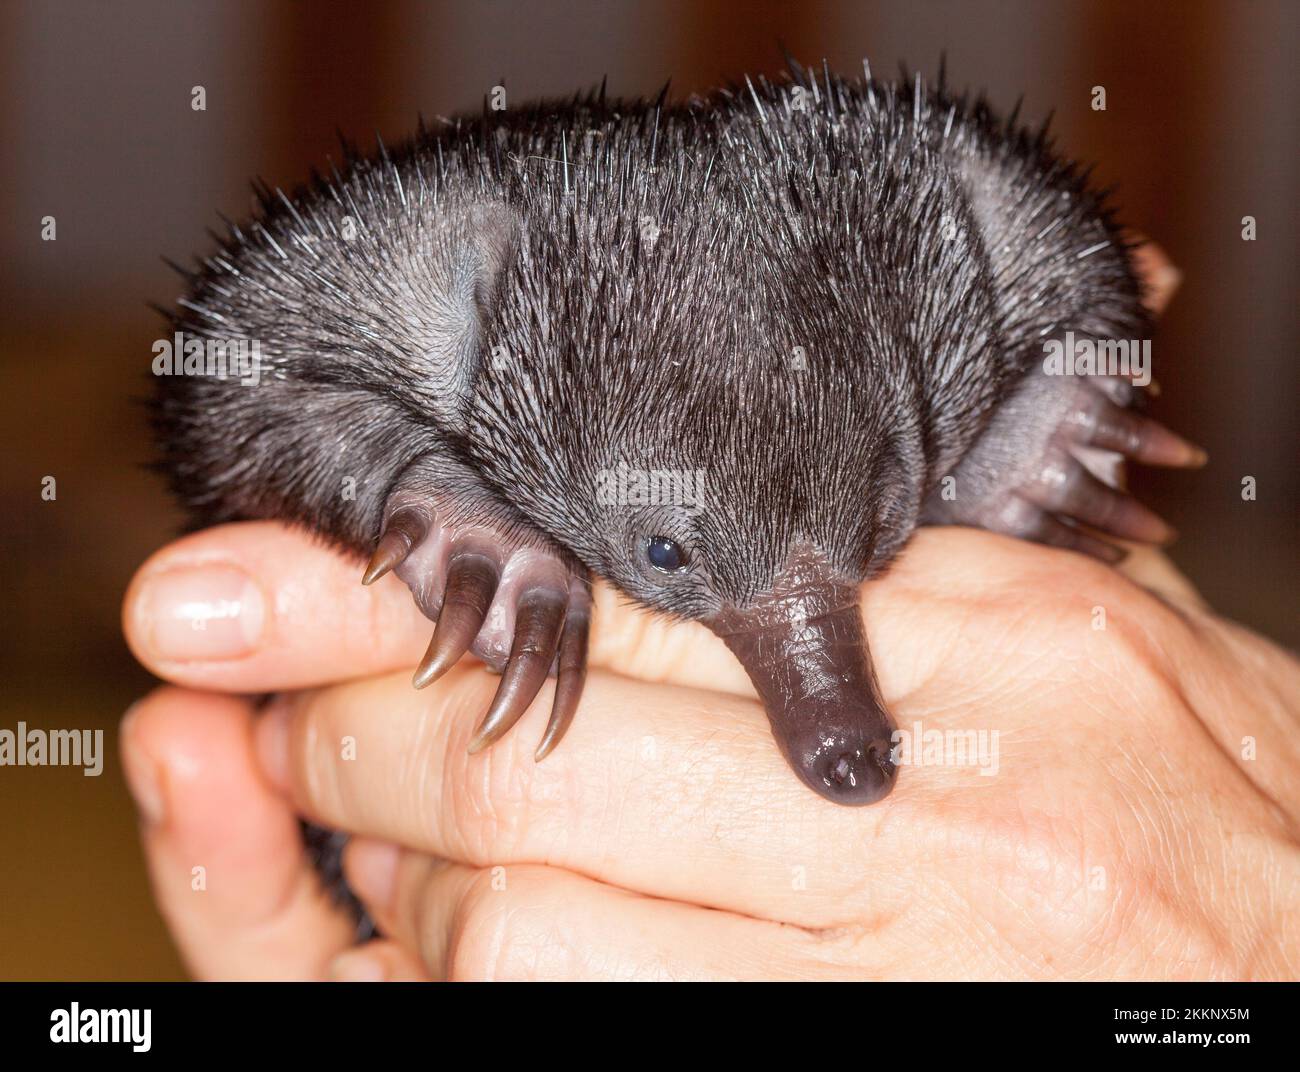 Un petit puggle, un bébé orphelin échidna à bec court, anteater épineux développant ses premières épines, dans les mains d'un calier de la faune en Australie Banque D'Images